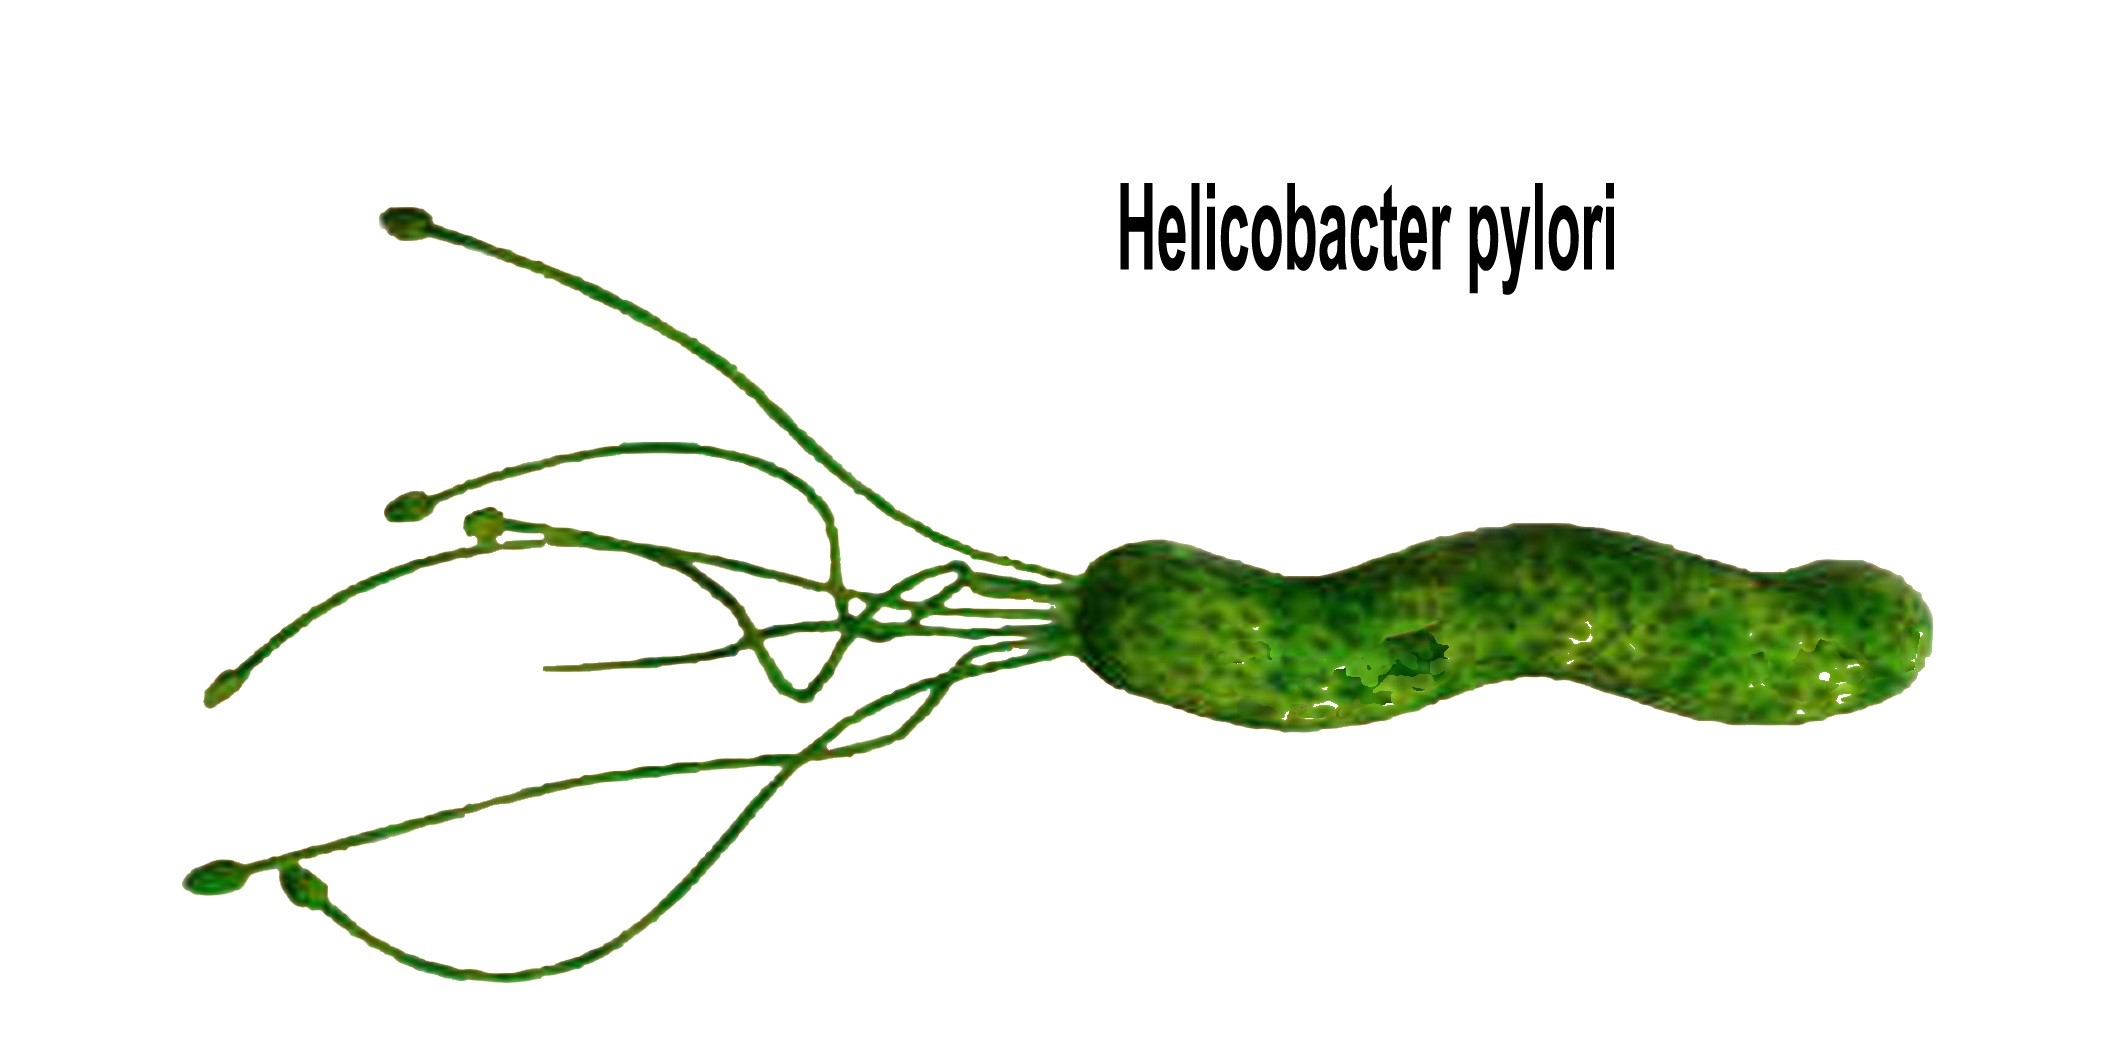 Bakteria H.pylori berbentuk pilin atau lingkaran